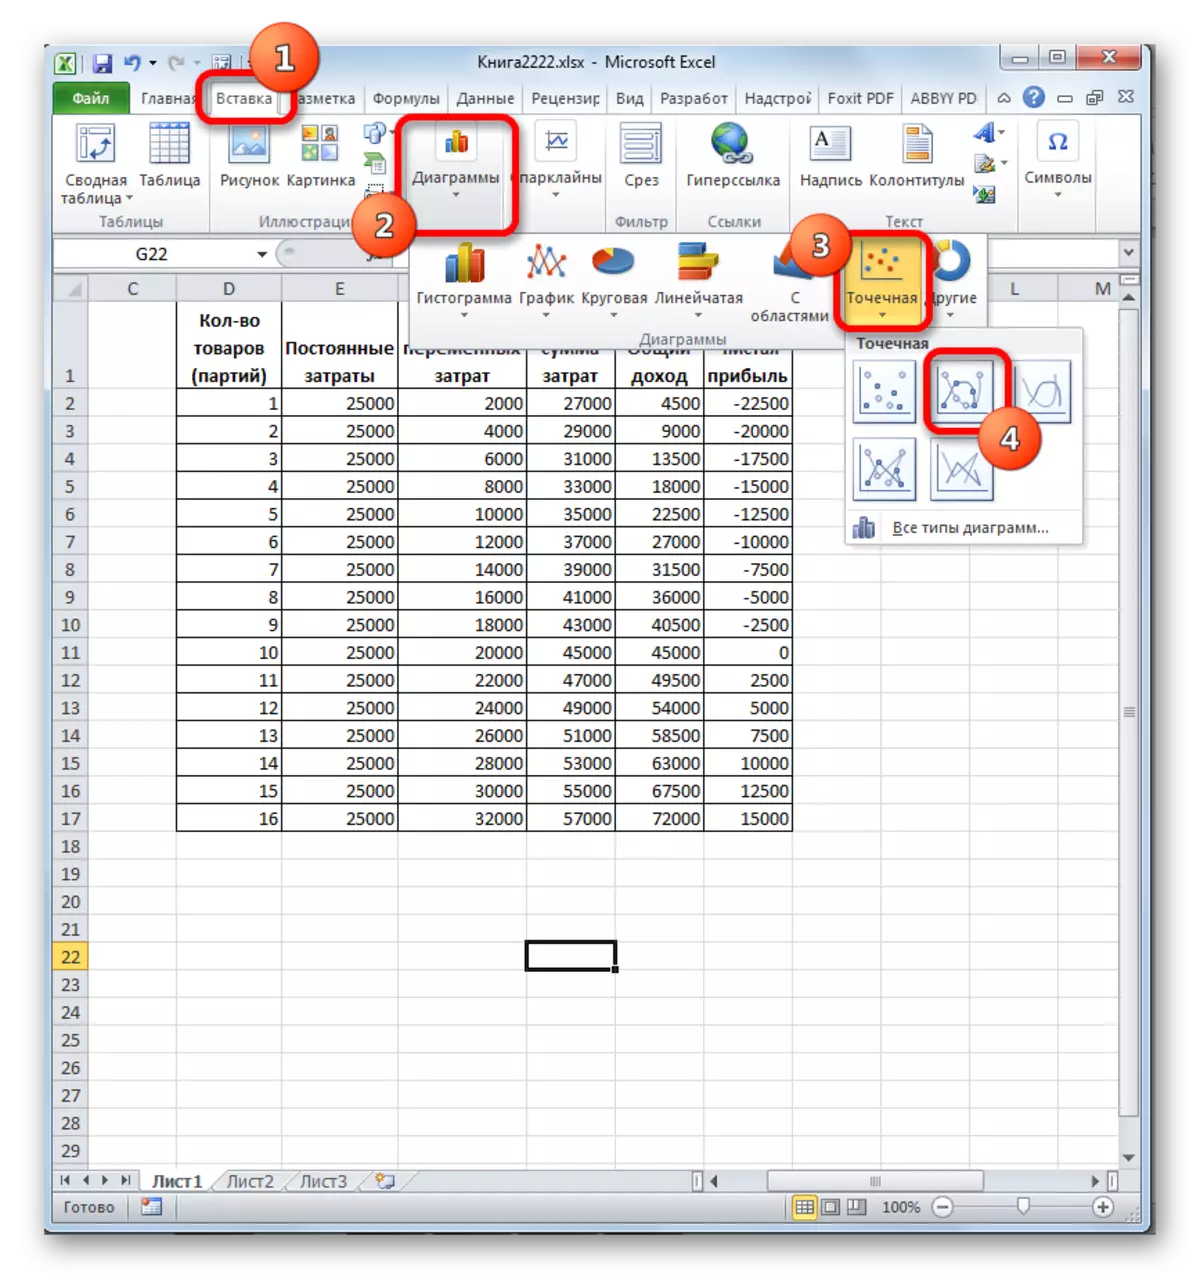 Microsoft Excel-da jadval turini tanlang